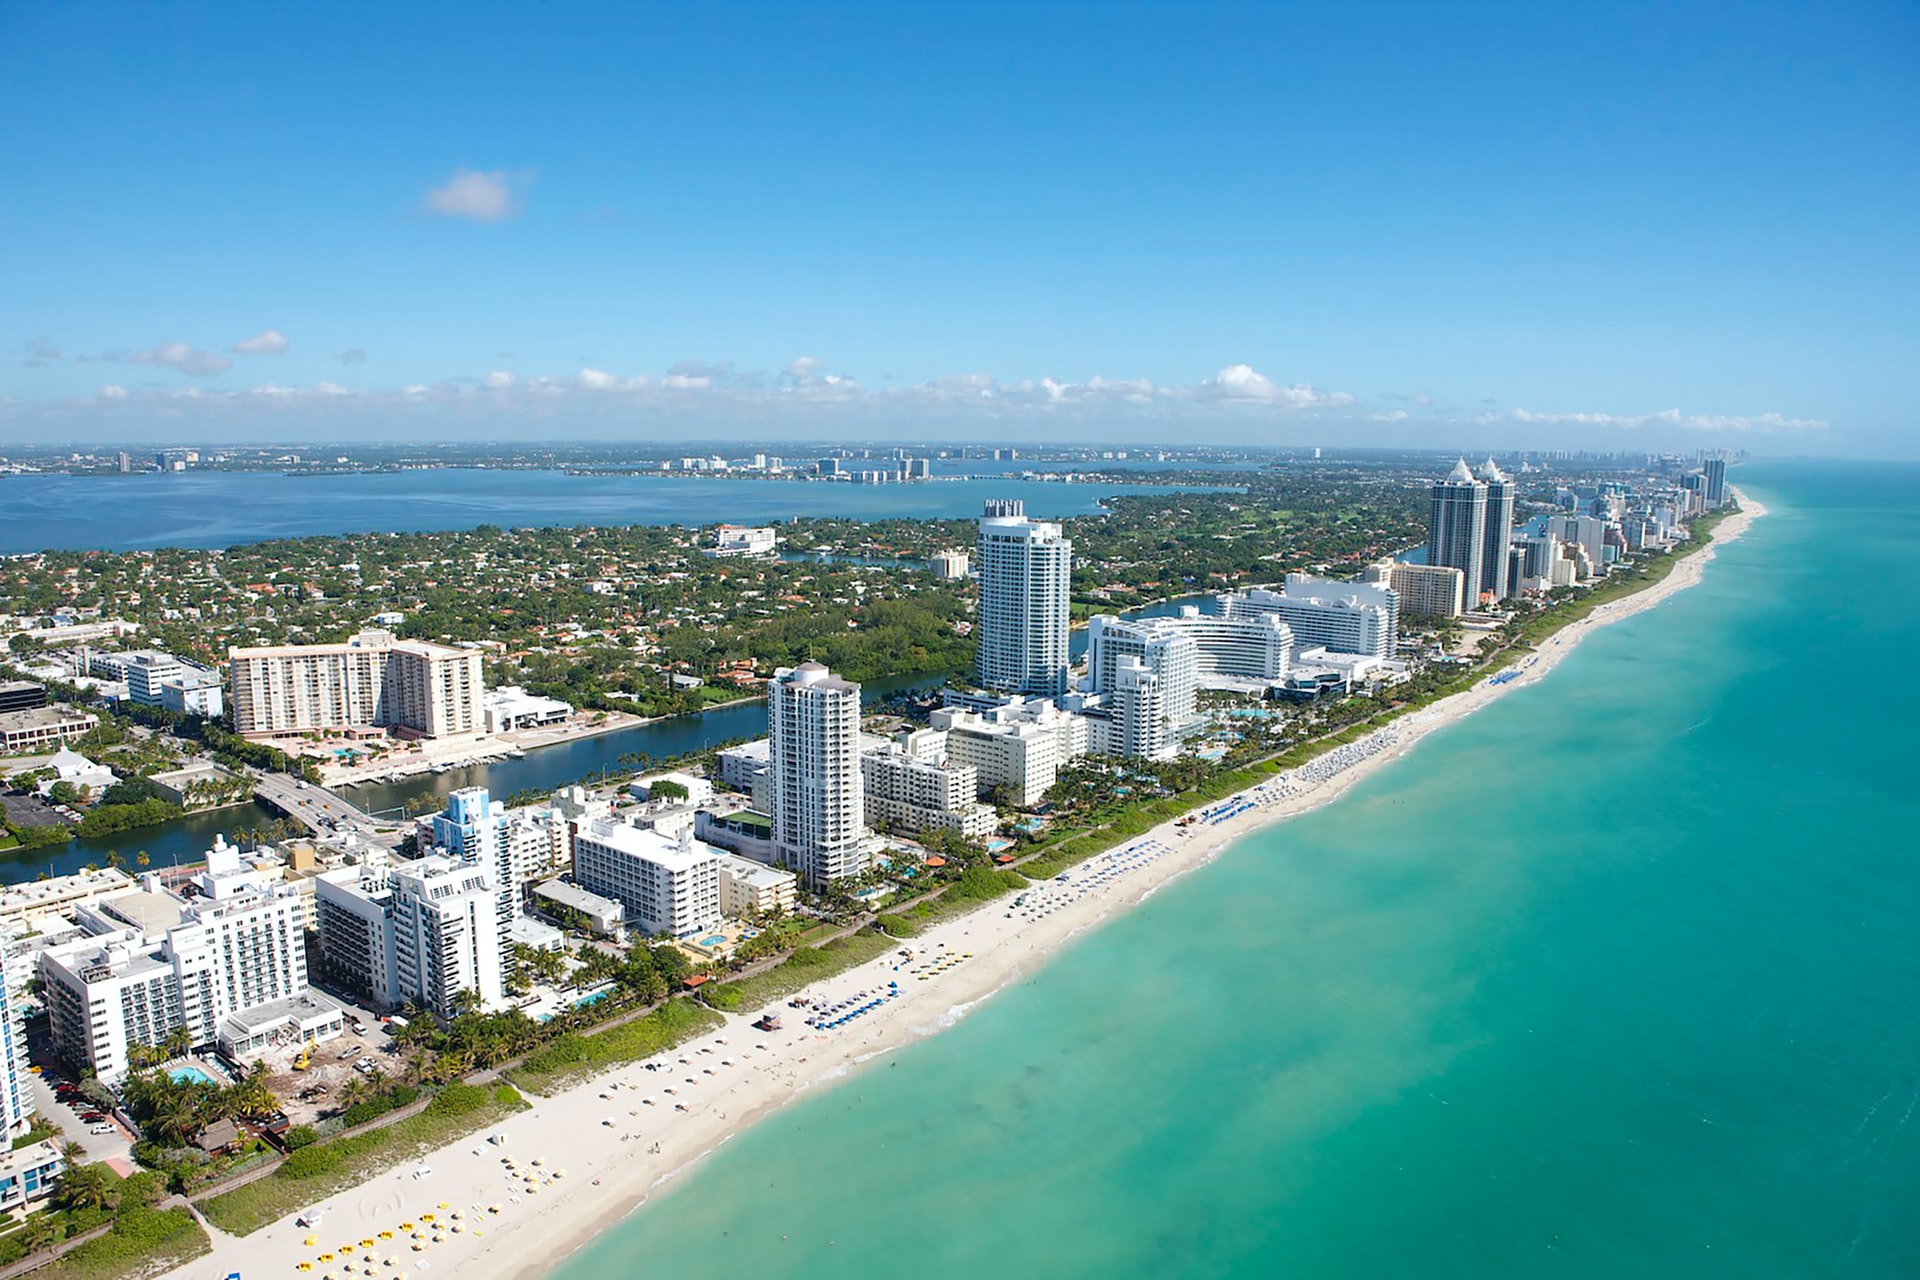 A drone photo of a beach in Miami